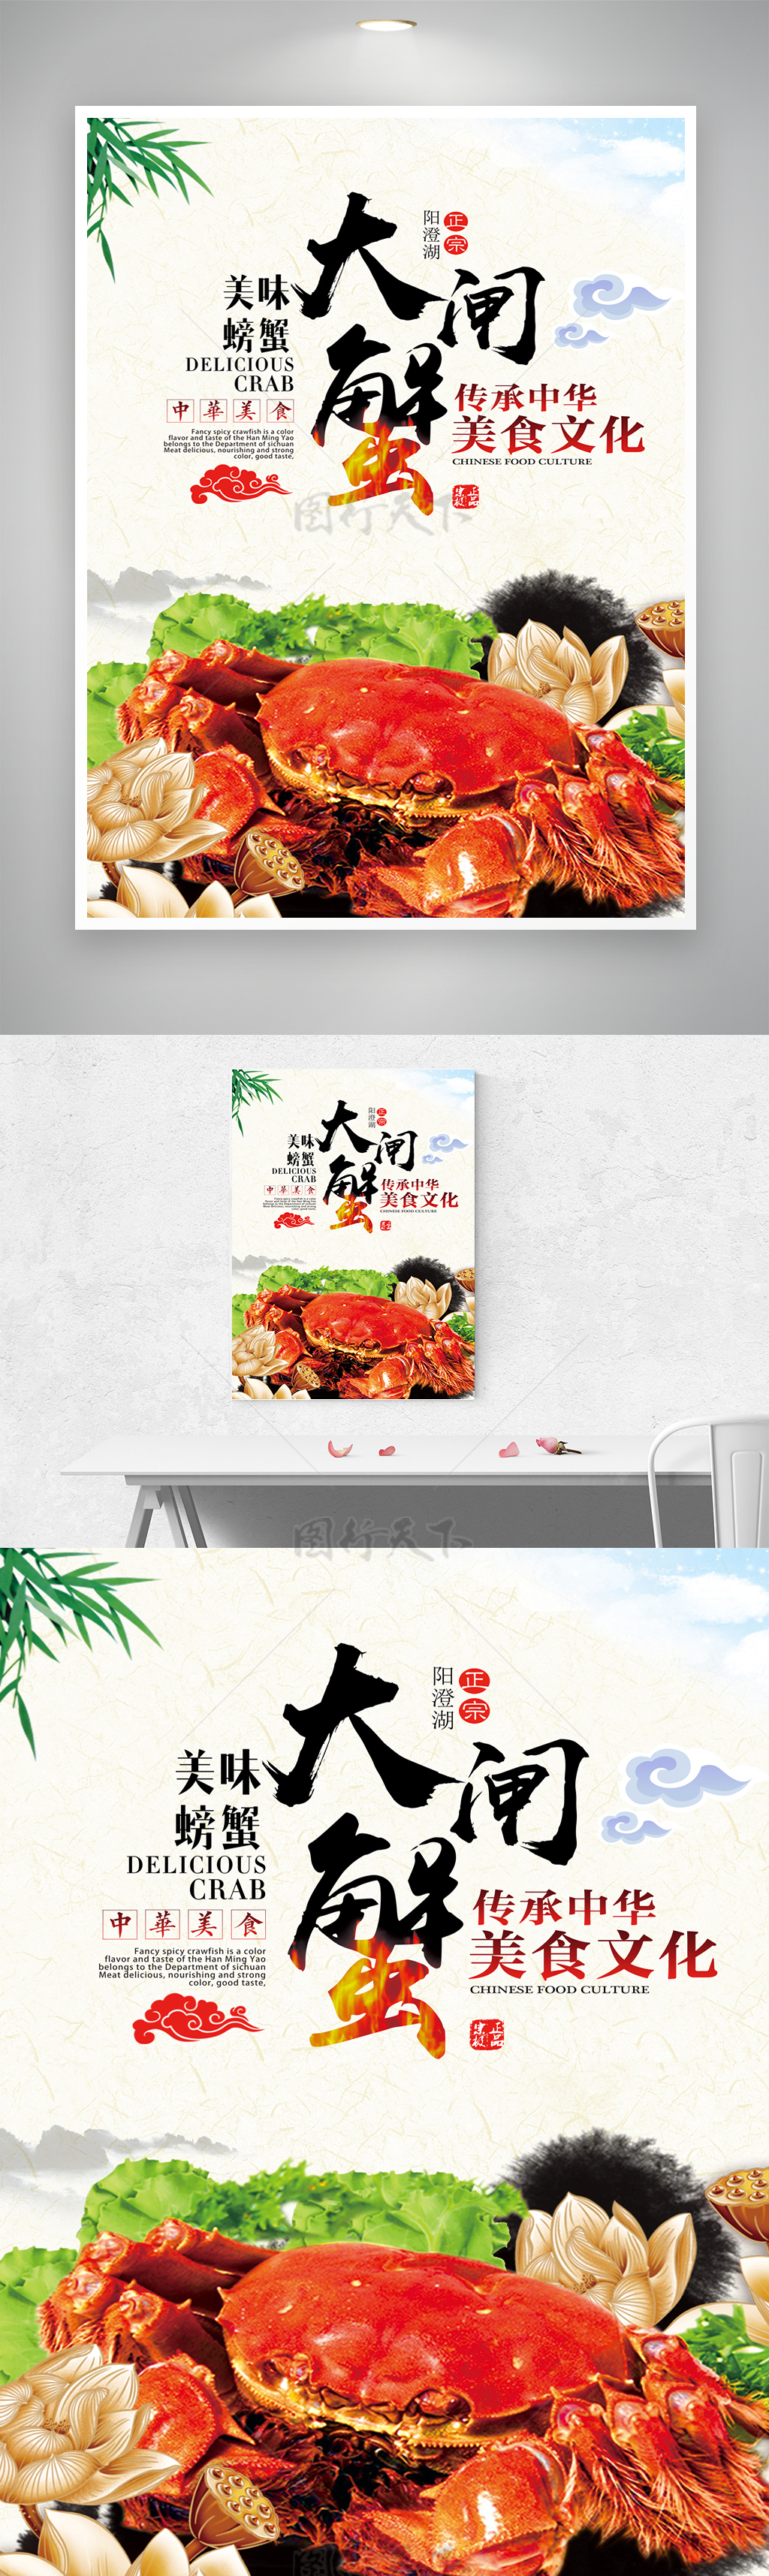 中国传承美味螃蟹美食活动海报